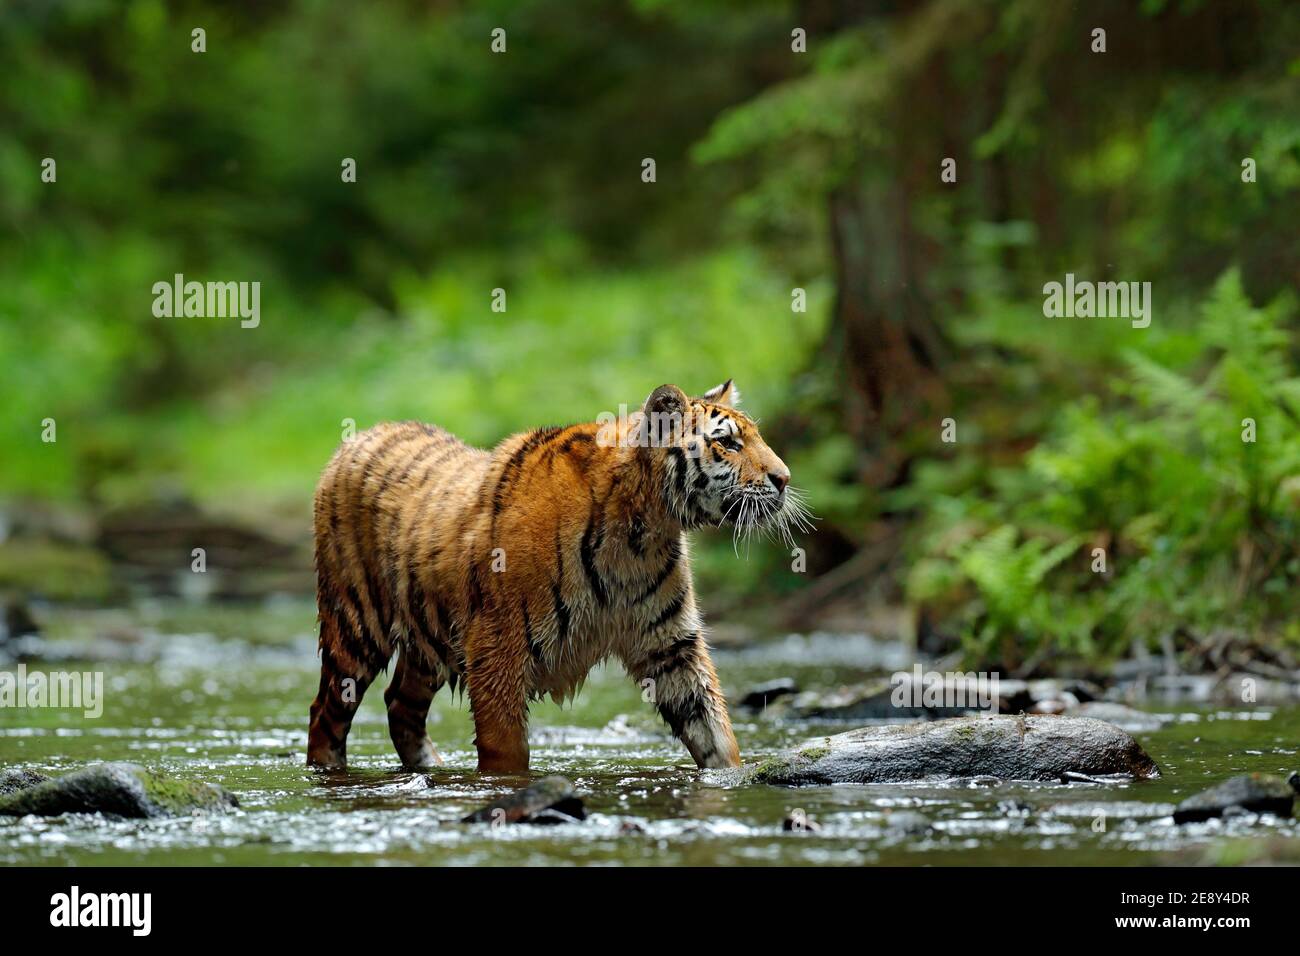 Tiger, Tierwelt Asien. Sibirischer Tiger läuft im Wasser, Sibirien. Gefährliches Tier, Taiga, Russland. Tier im grünen Waldbach. Amur Tiger Splashi Stockfoto